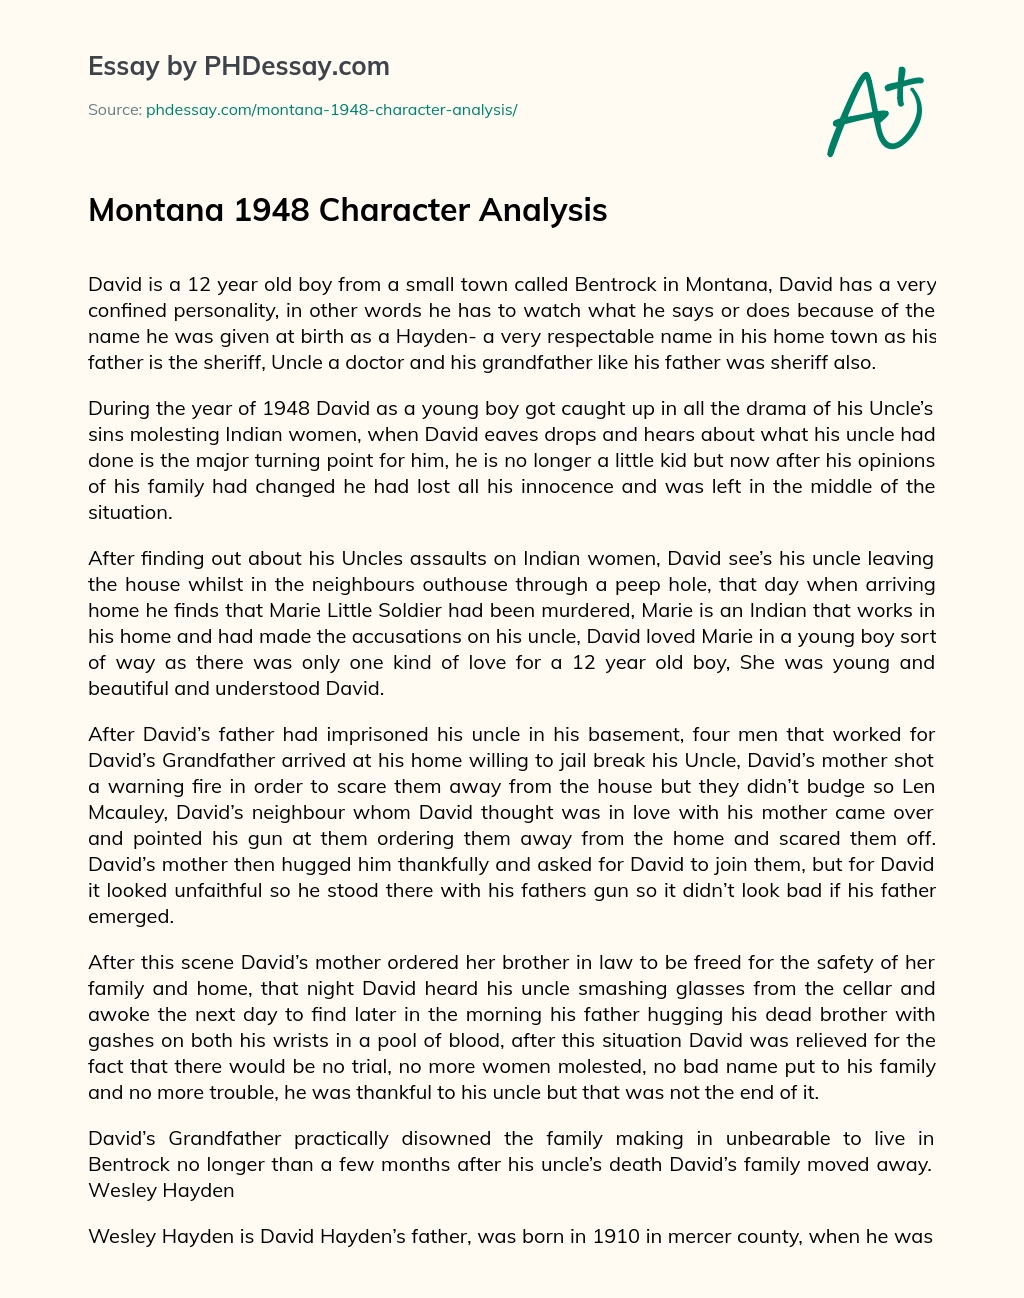 Montana 1948 Character Analysis essay